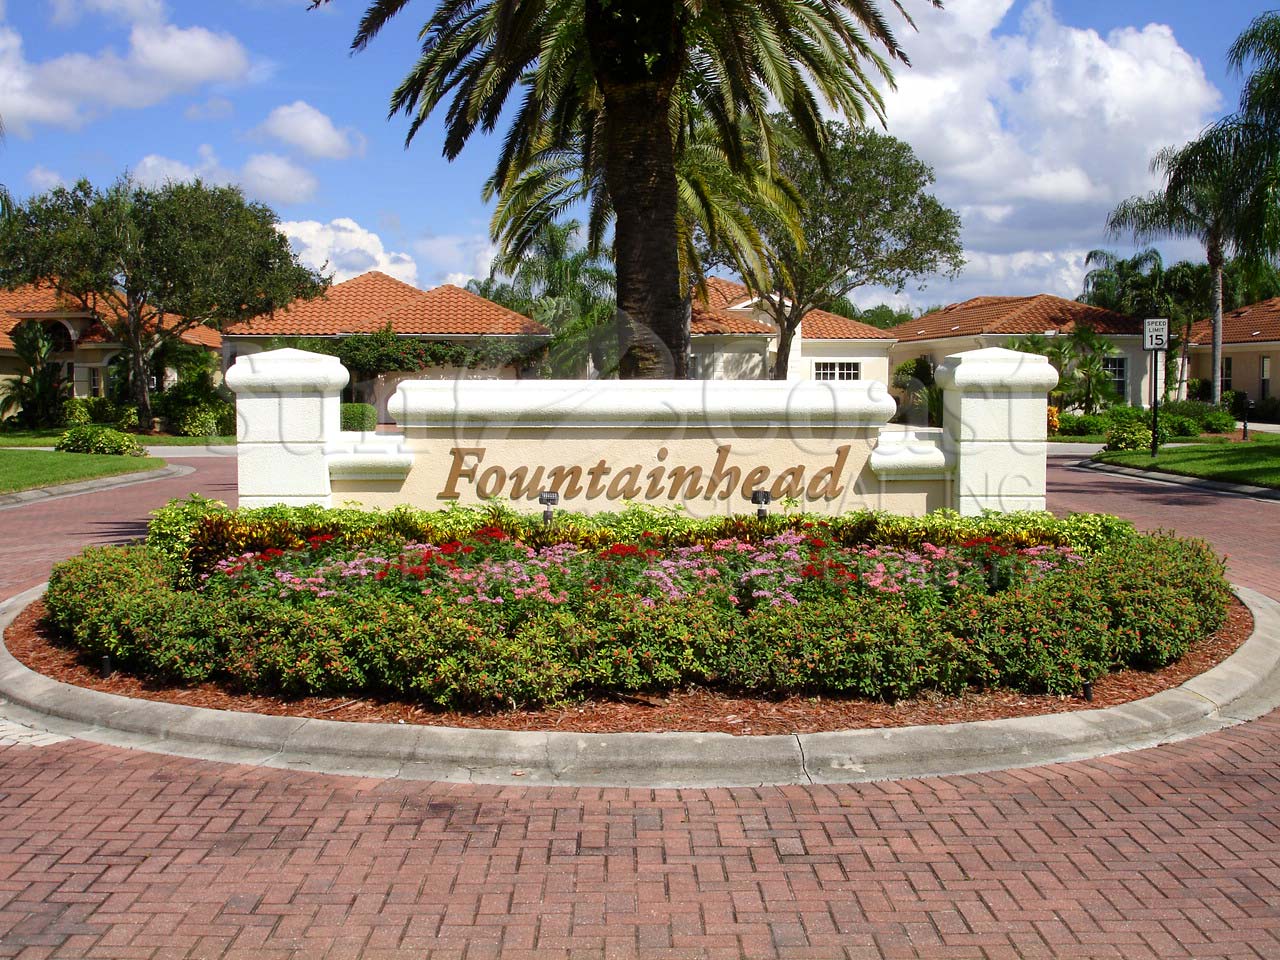 Fountainhead signage